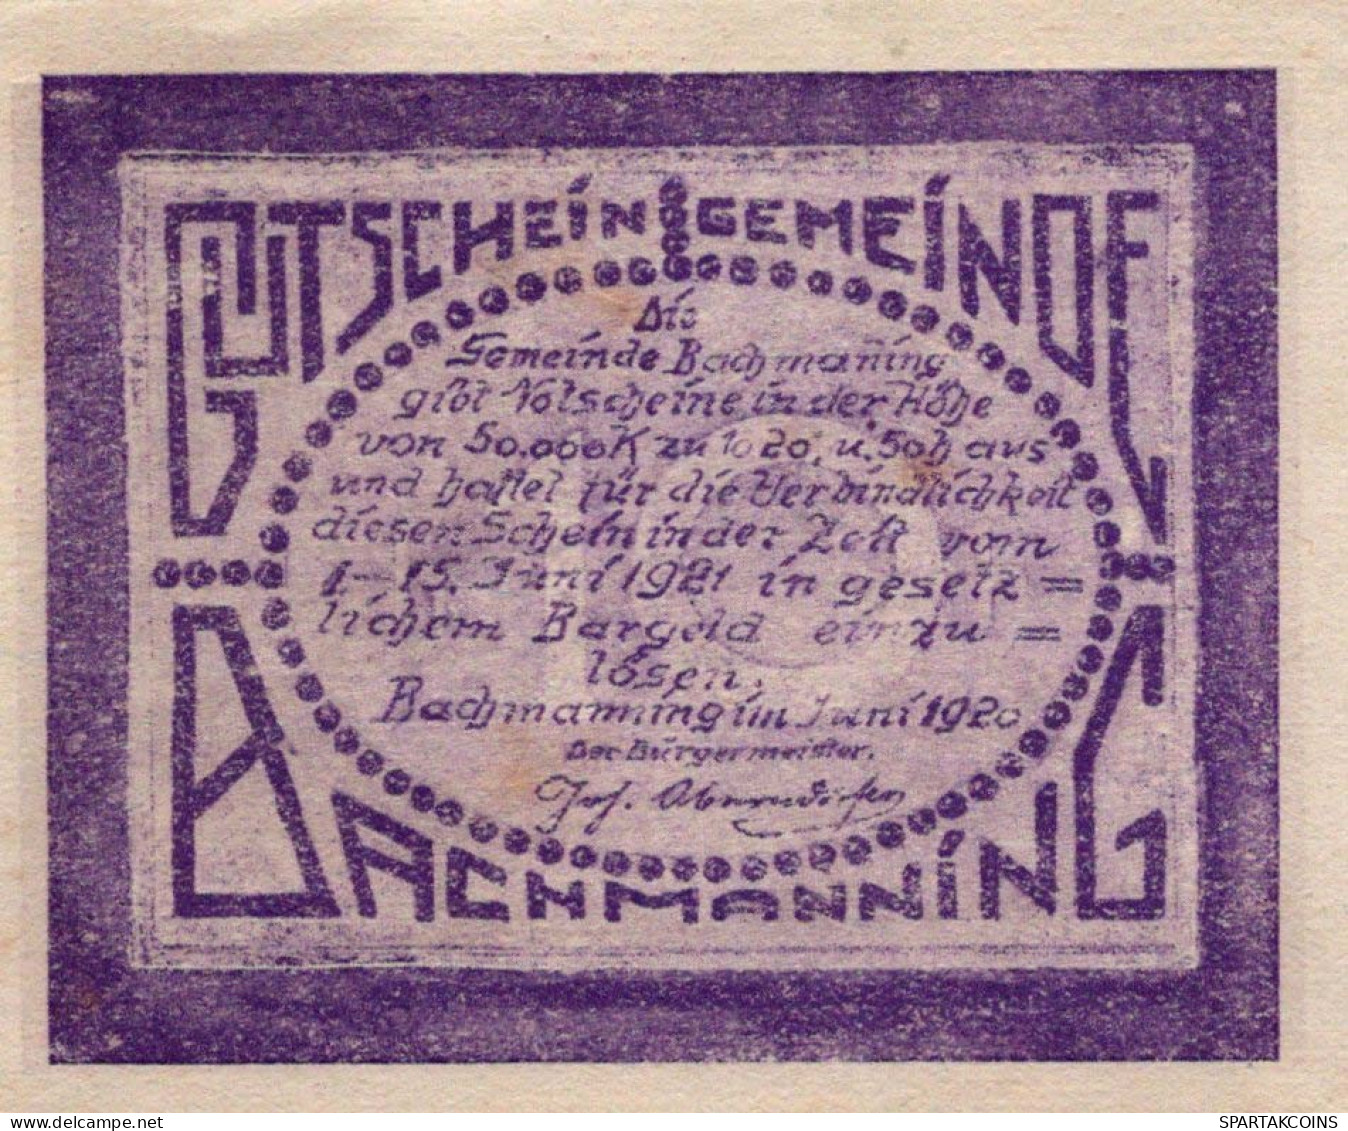 10 HELLER 1920 Stadt BACHMANNING Oberösterreich Österreich Notgeld #PF166 - [11] Local Banknote Issues